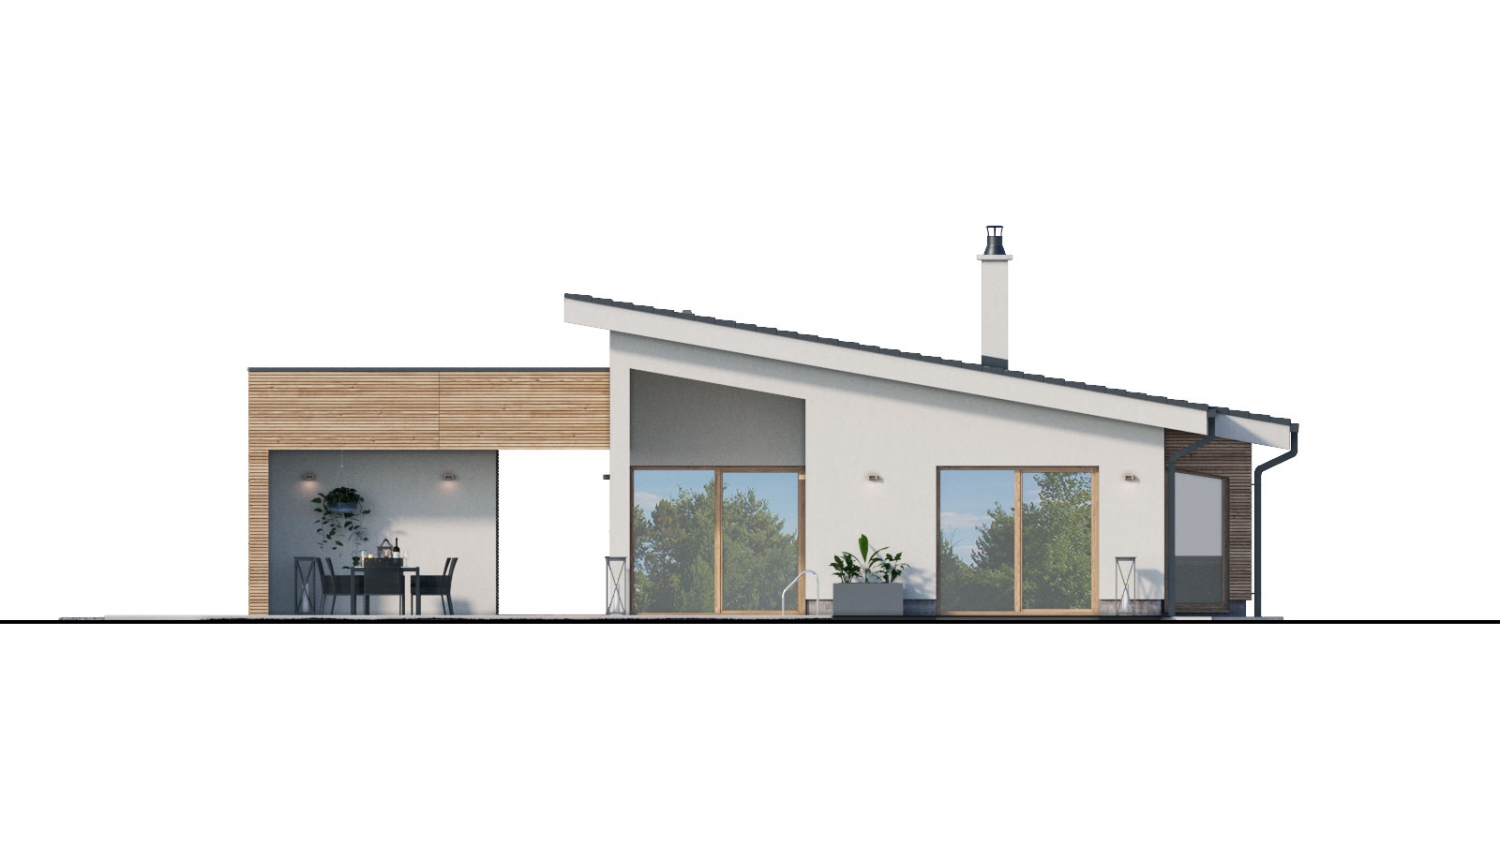 Pohľad 3. - projekt moderního bungalovu s garáží vhodného pro 4 až 6 člennou rodinu